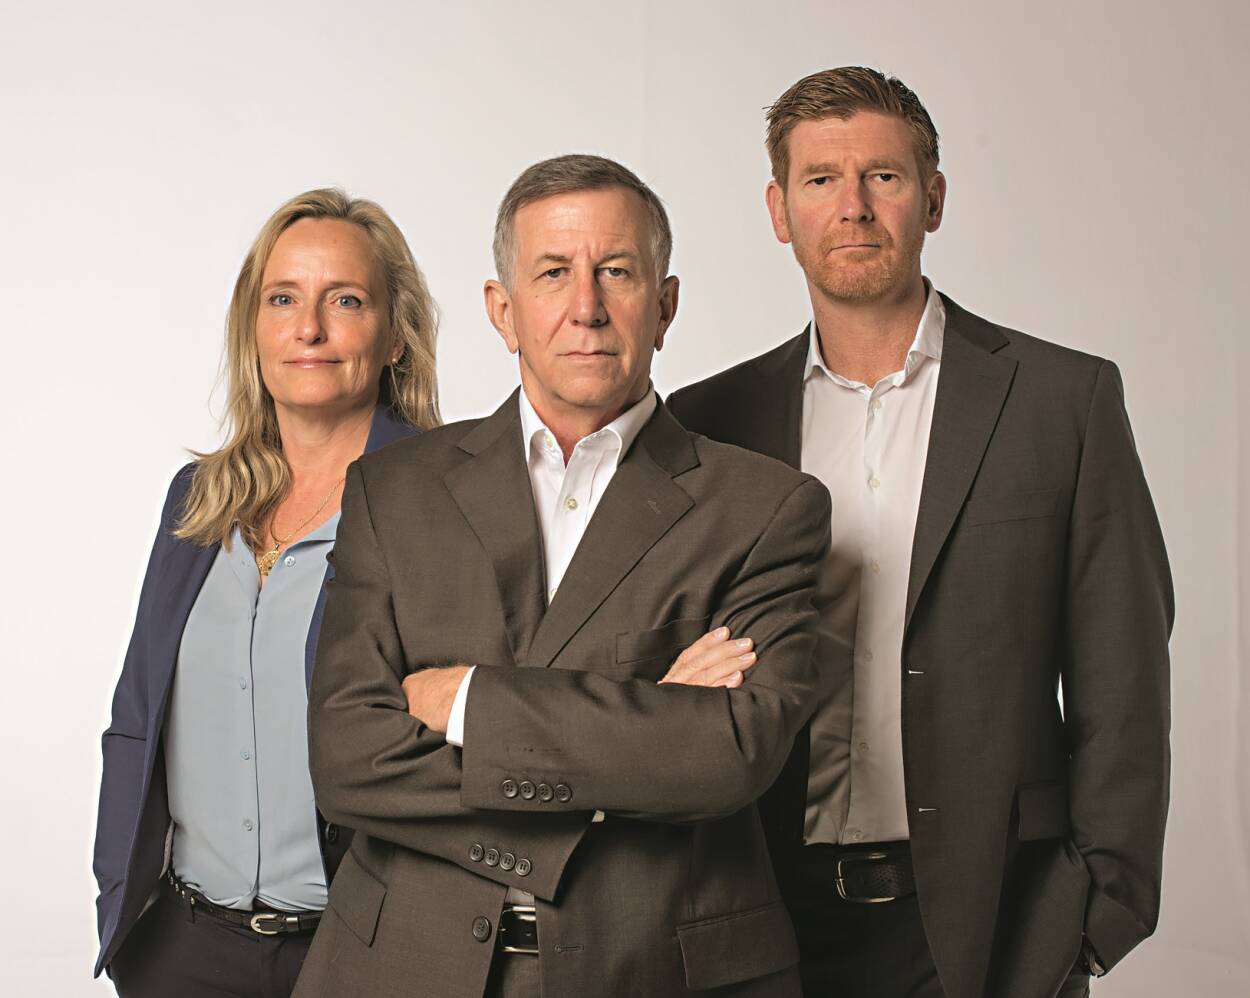 Fot. HarperCollins Polska/Proditione - Członkowie zespołu badawczego, od lewej: Monique Koemans, Vince Pankoke i Brendan Rook